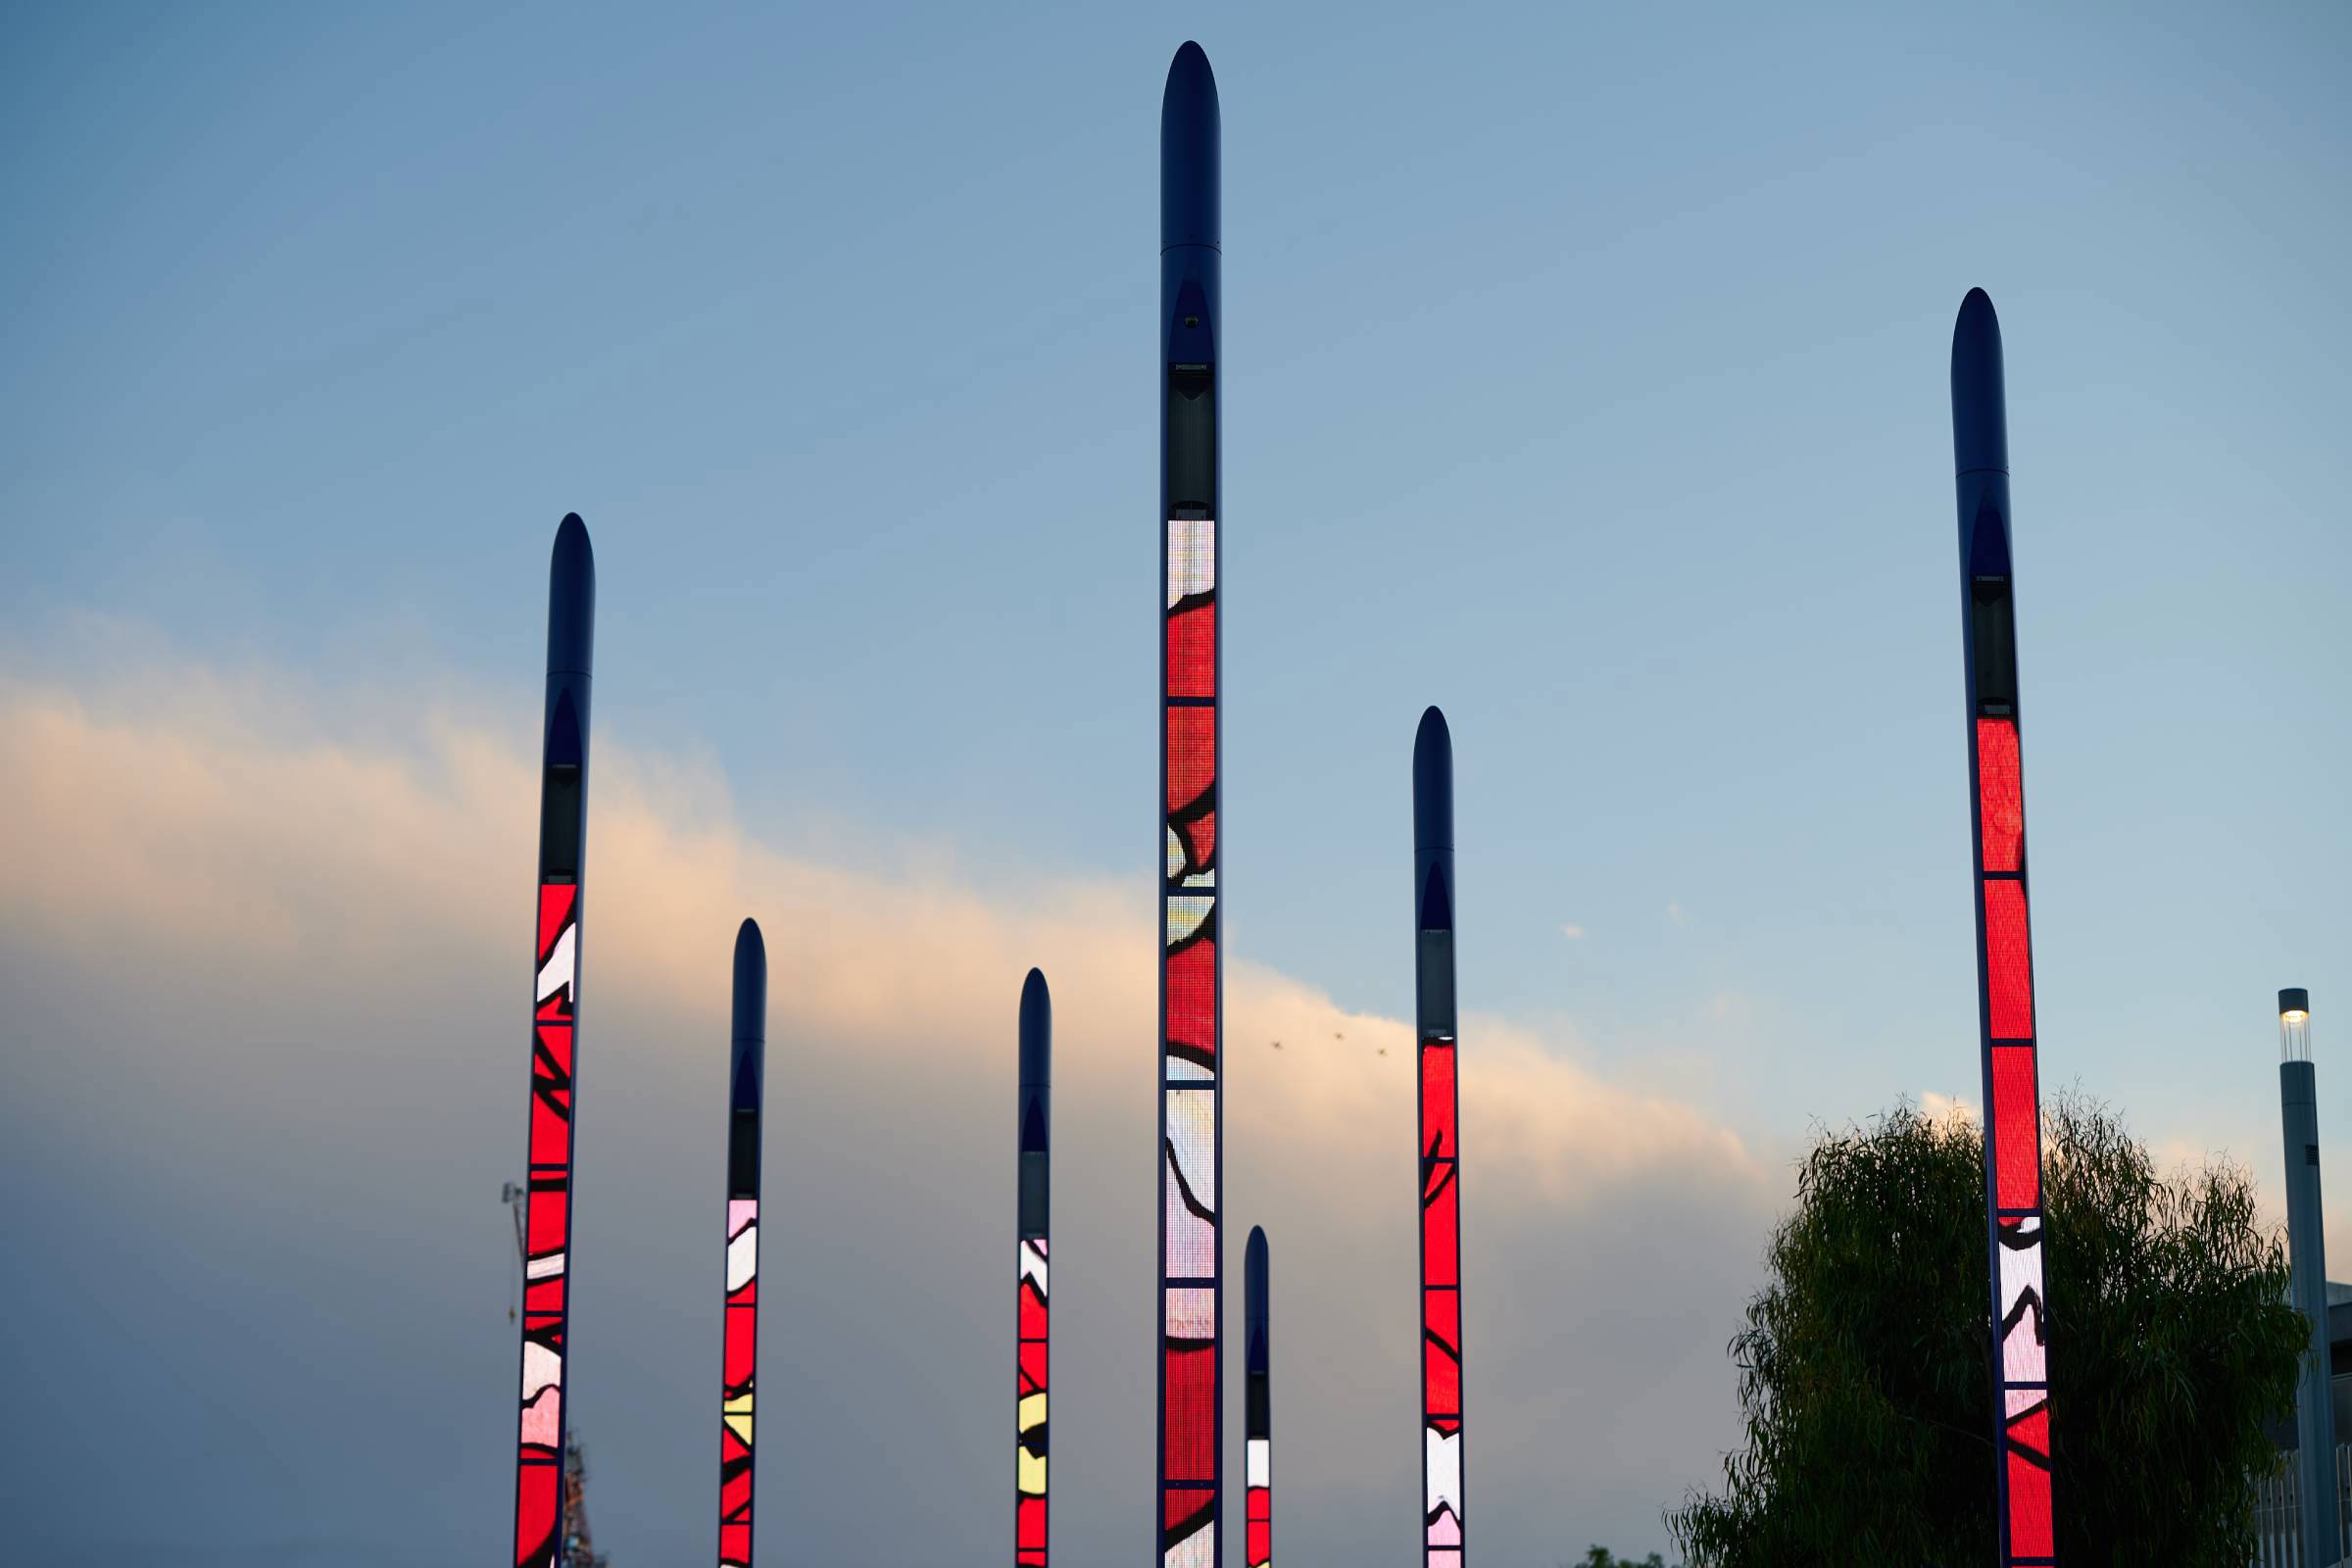 The Pipes Digital Artwork at Prahran Square | © RAMUS